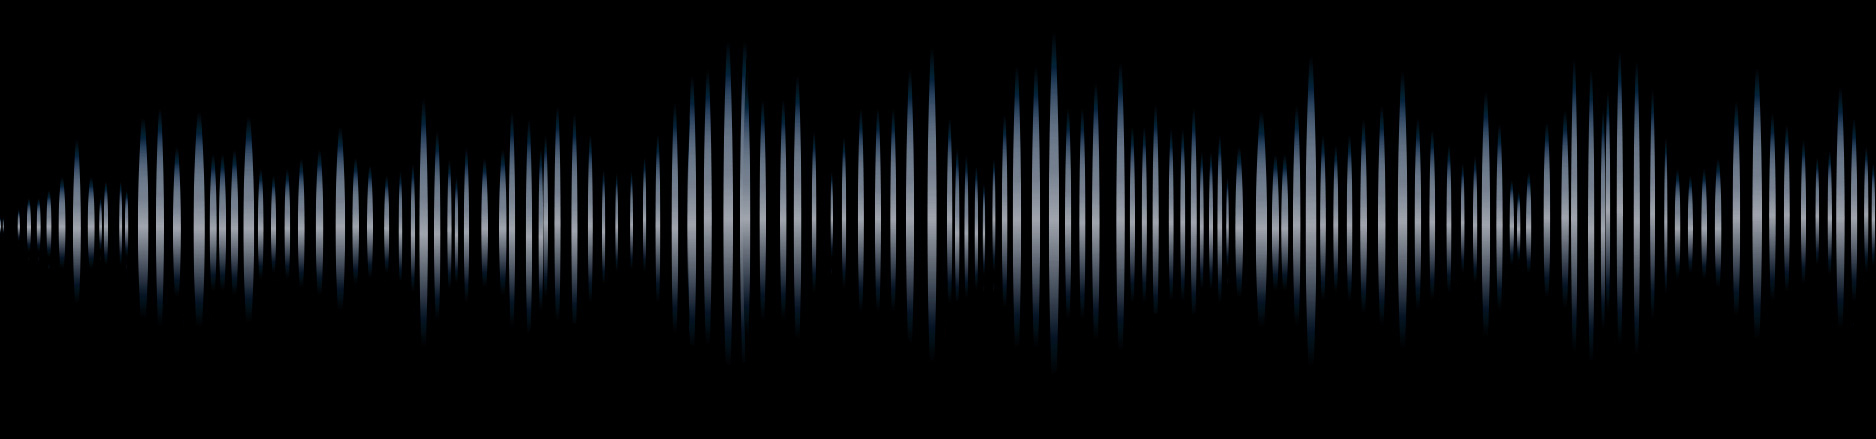 Intelligent voice recognition